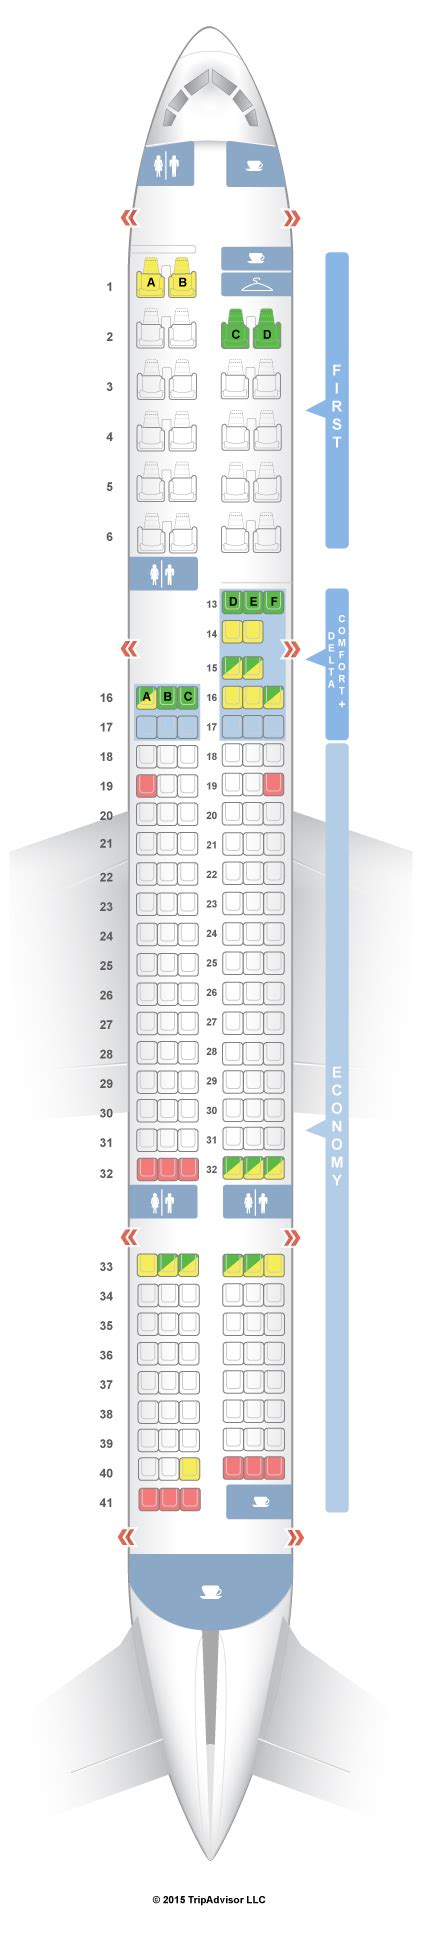 Seatguru Seat Map Delta Boeing 757 200 75n